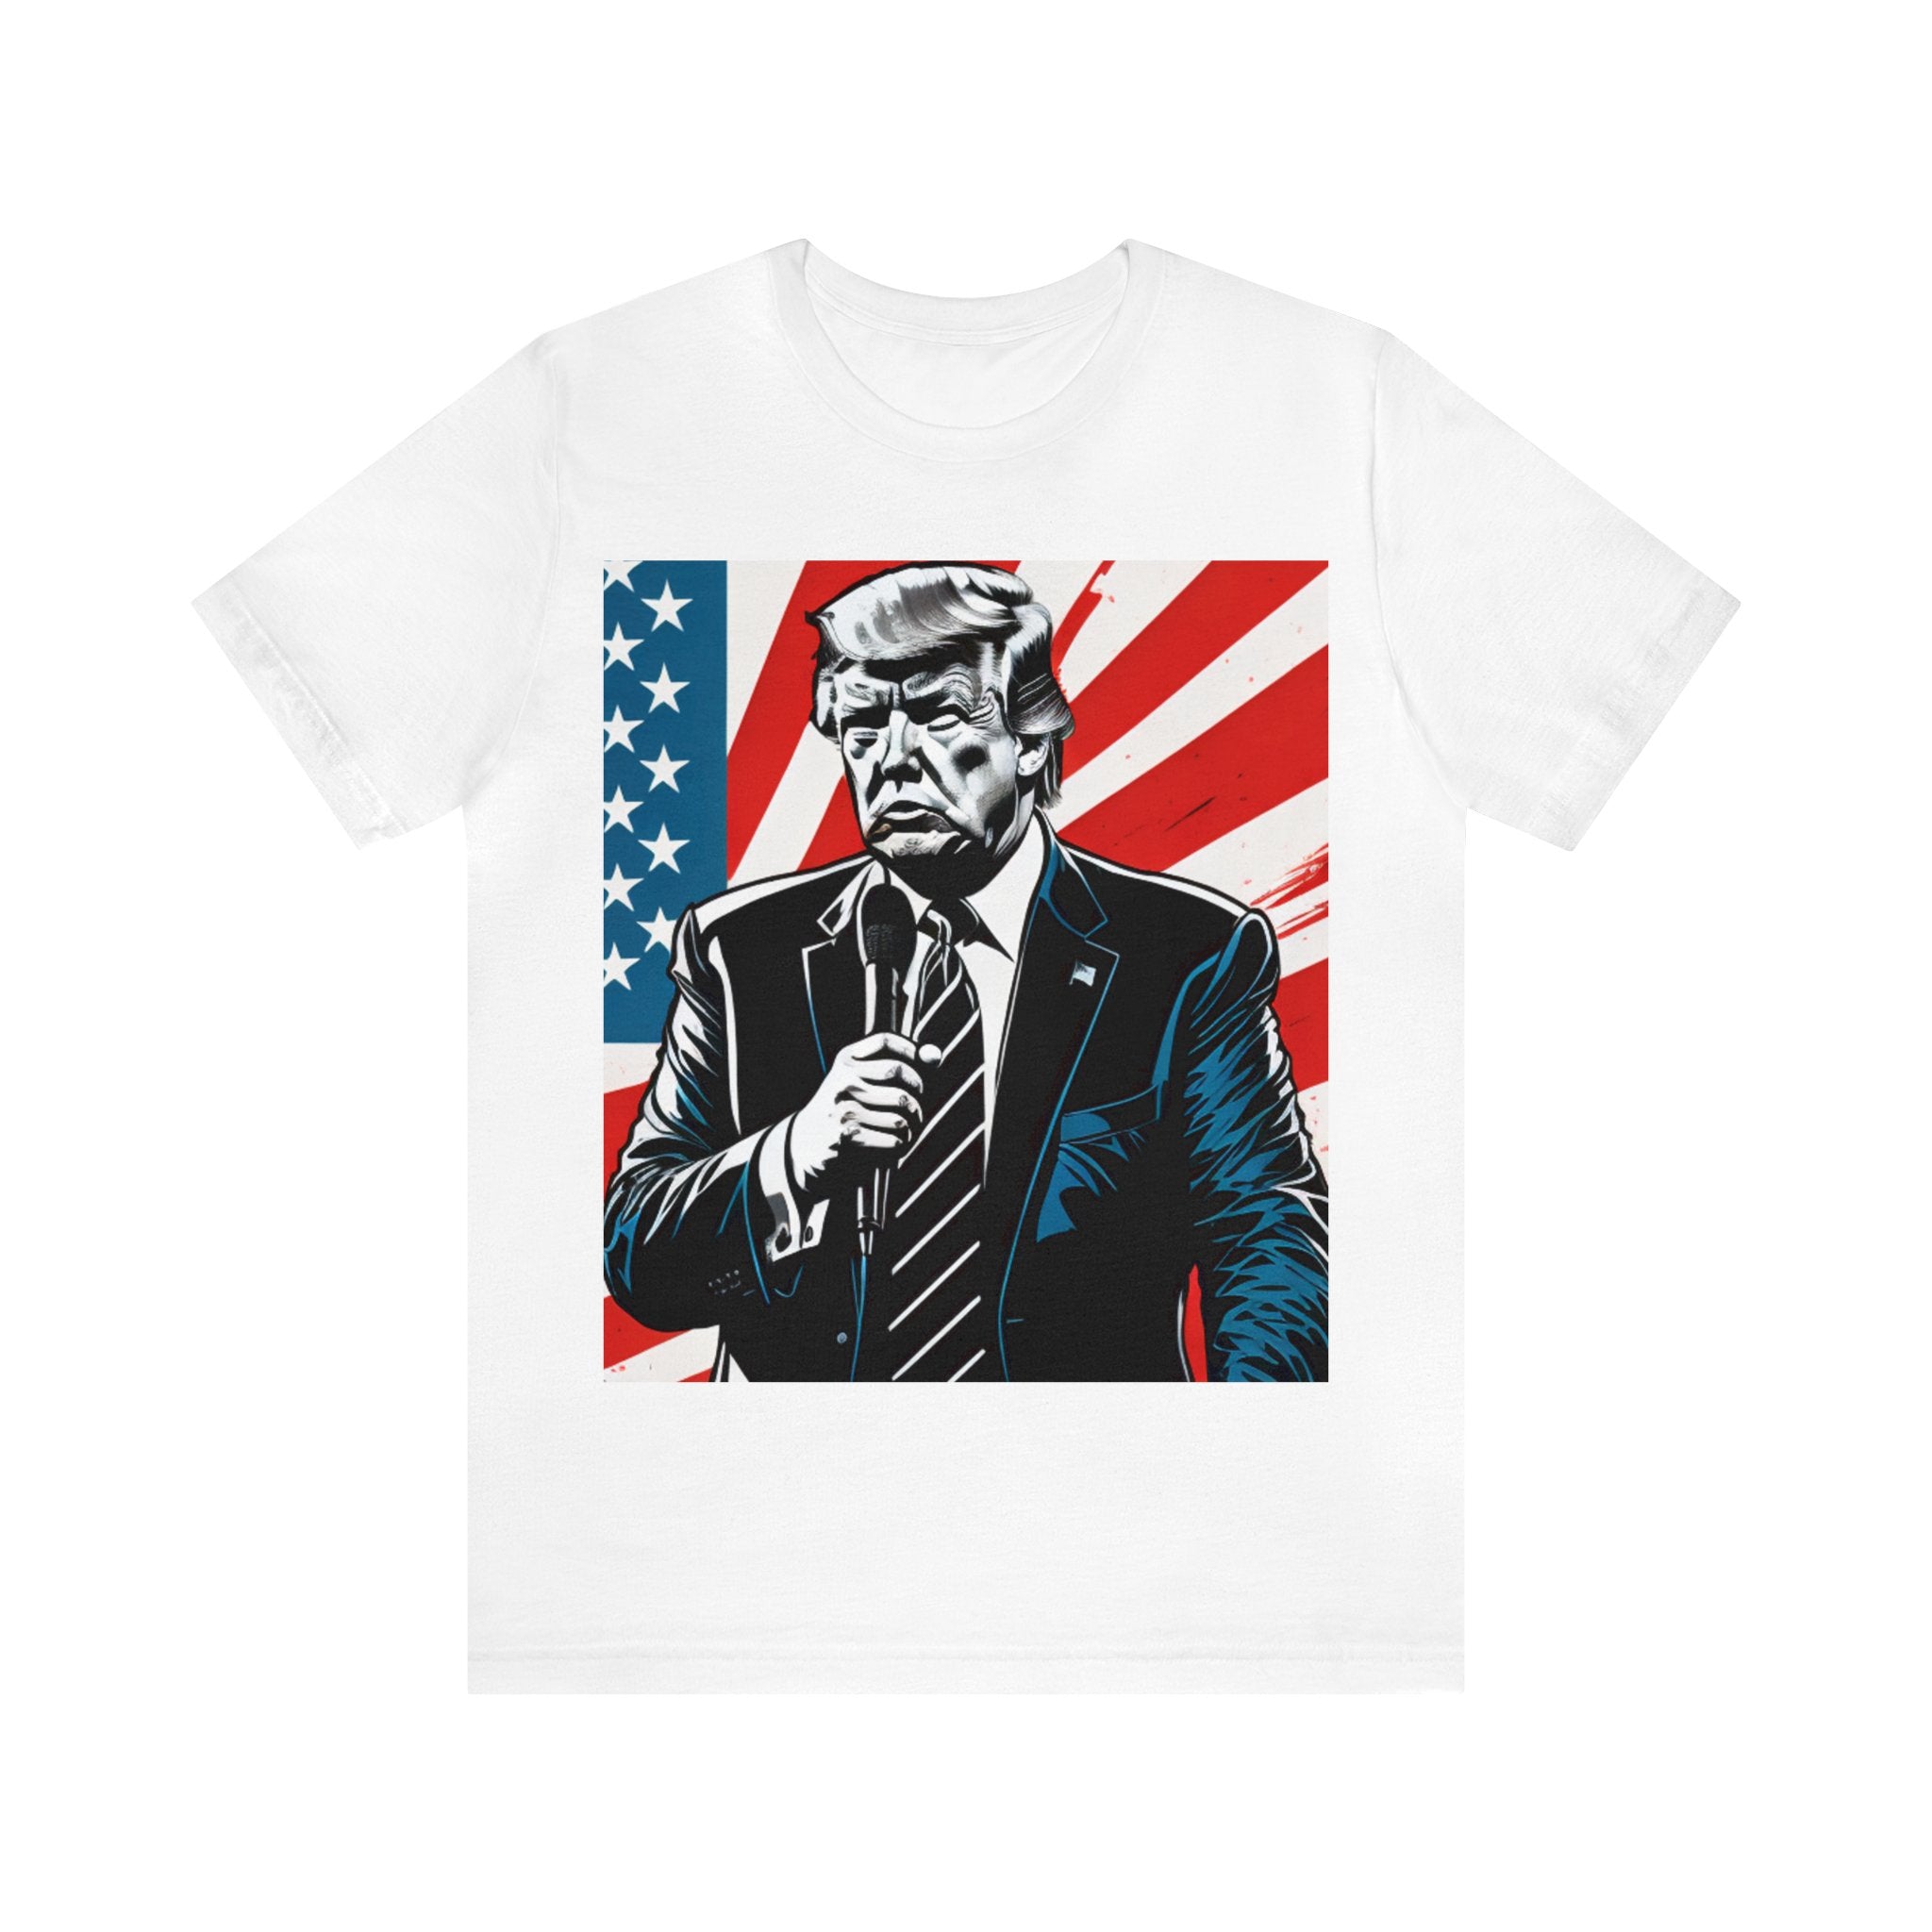 Donald Trump Shirt